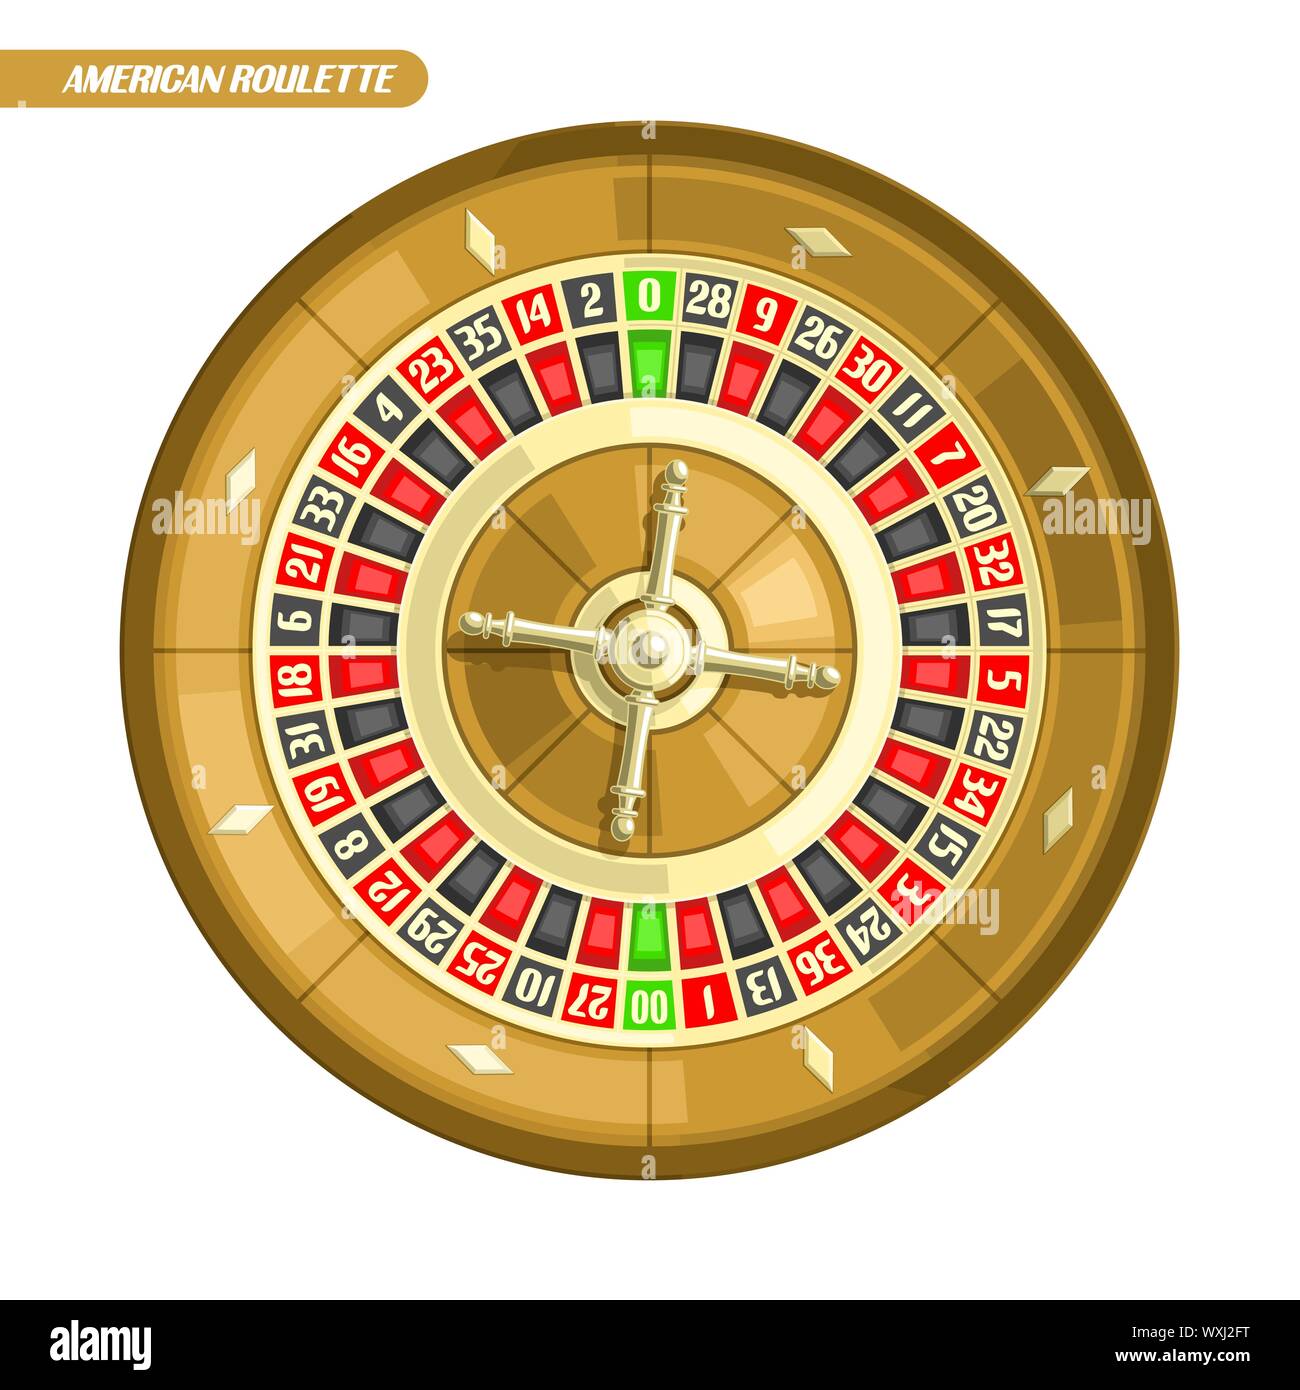 Illustrazione Vettoriale di ruota della Roulette: American Roulette con doppio  zero e golden wheel per online casino, vista dall'alto, isolato su sfondo  bianco Immagine e Vettoriale - Alamy